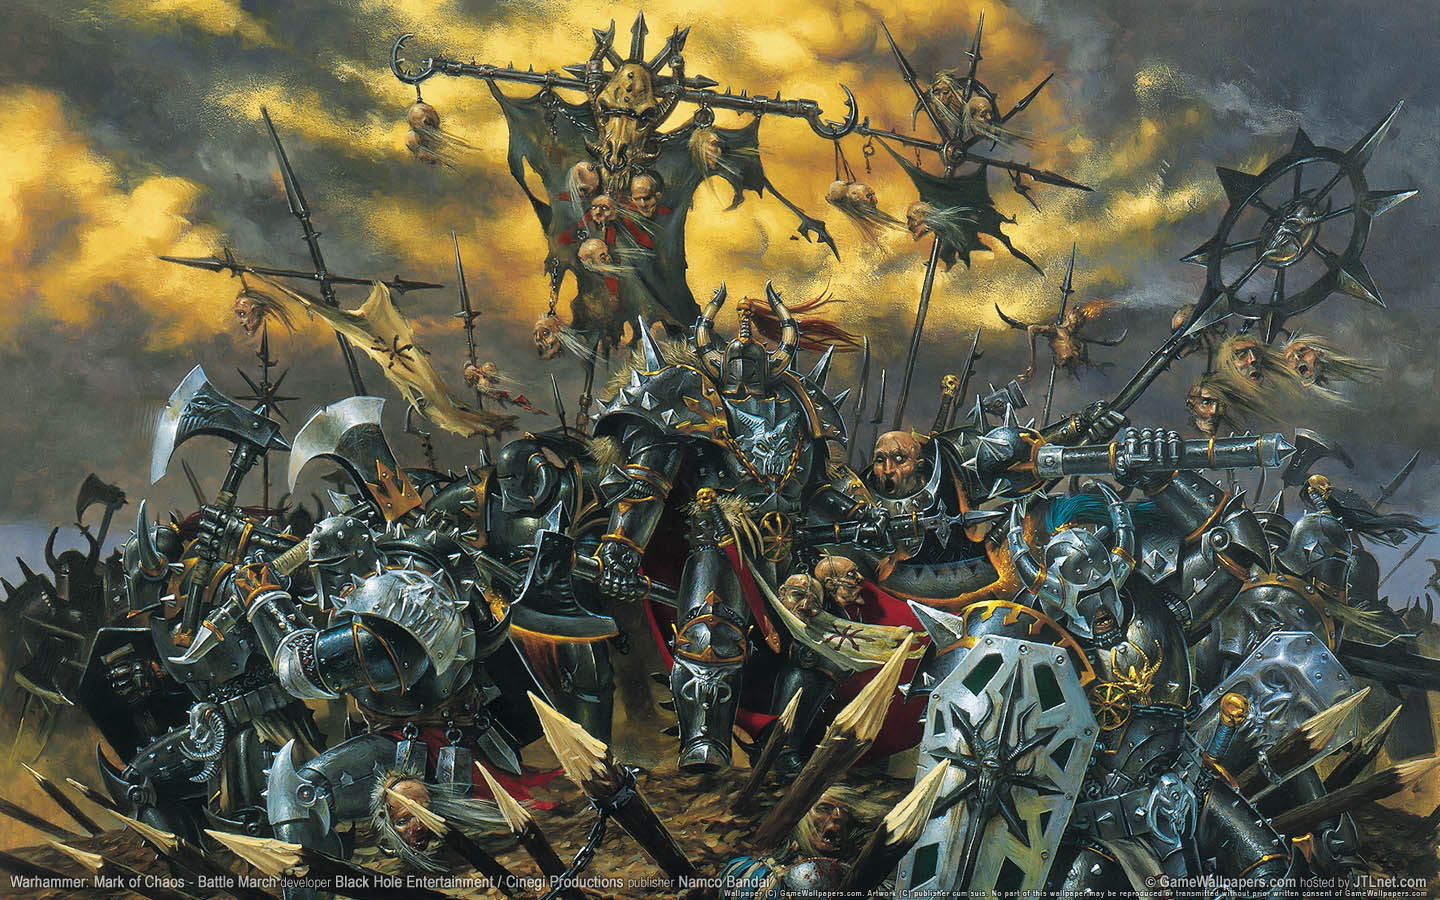 Warhammer: Mark of Chaos - Battle March fond d'cran 01 1440x900